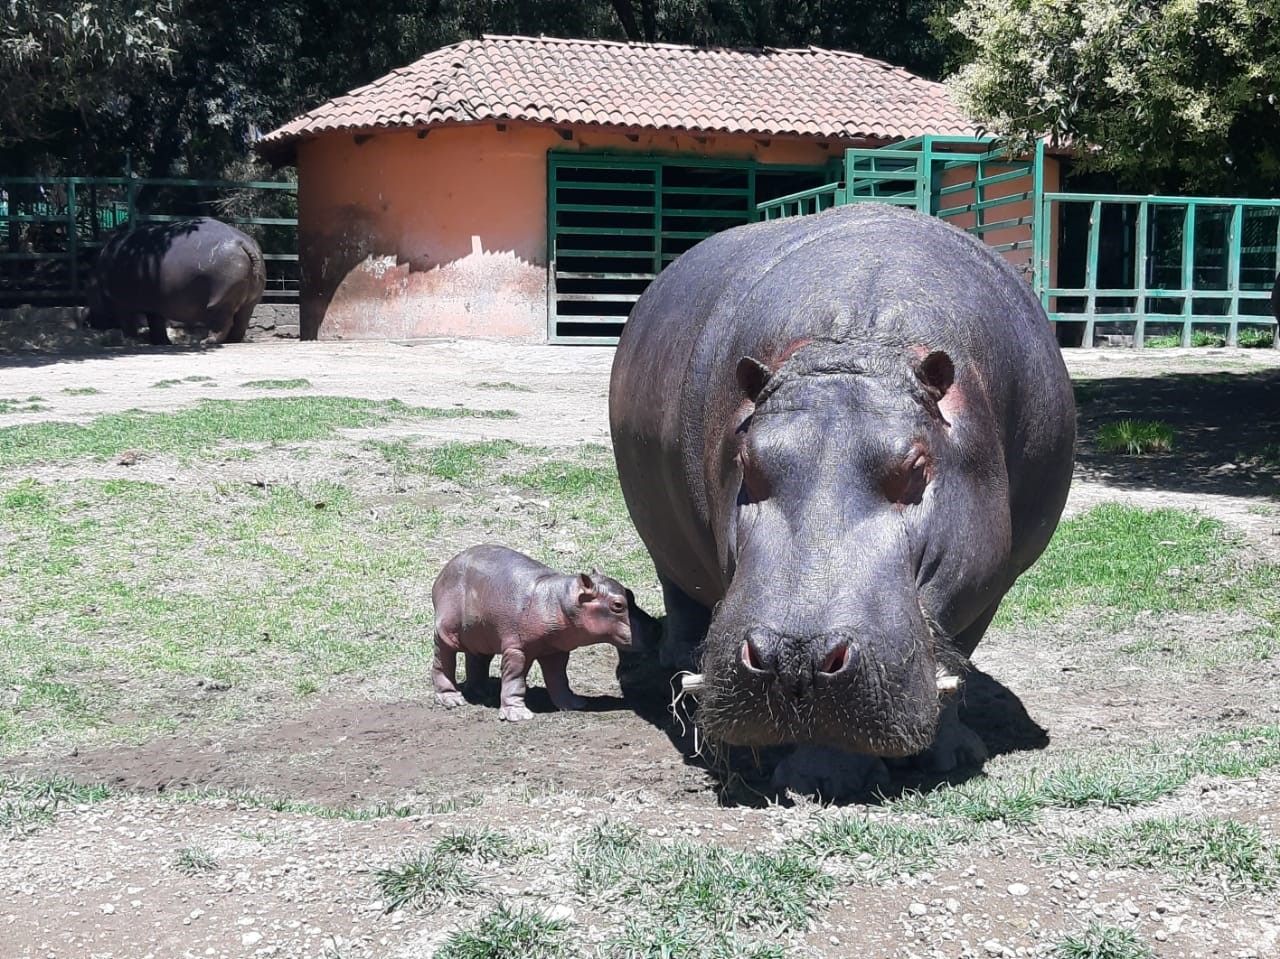 
#Nació el 13 de julio bebé hipopótamo en el Parque Ecológico de Zacango, Estado de México